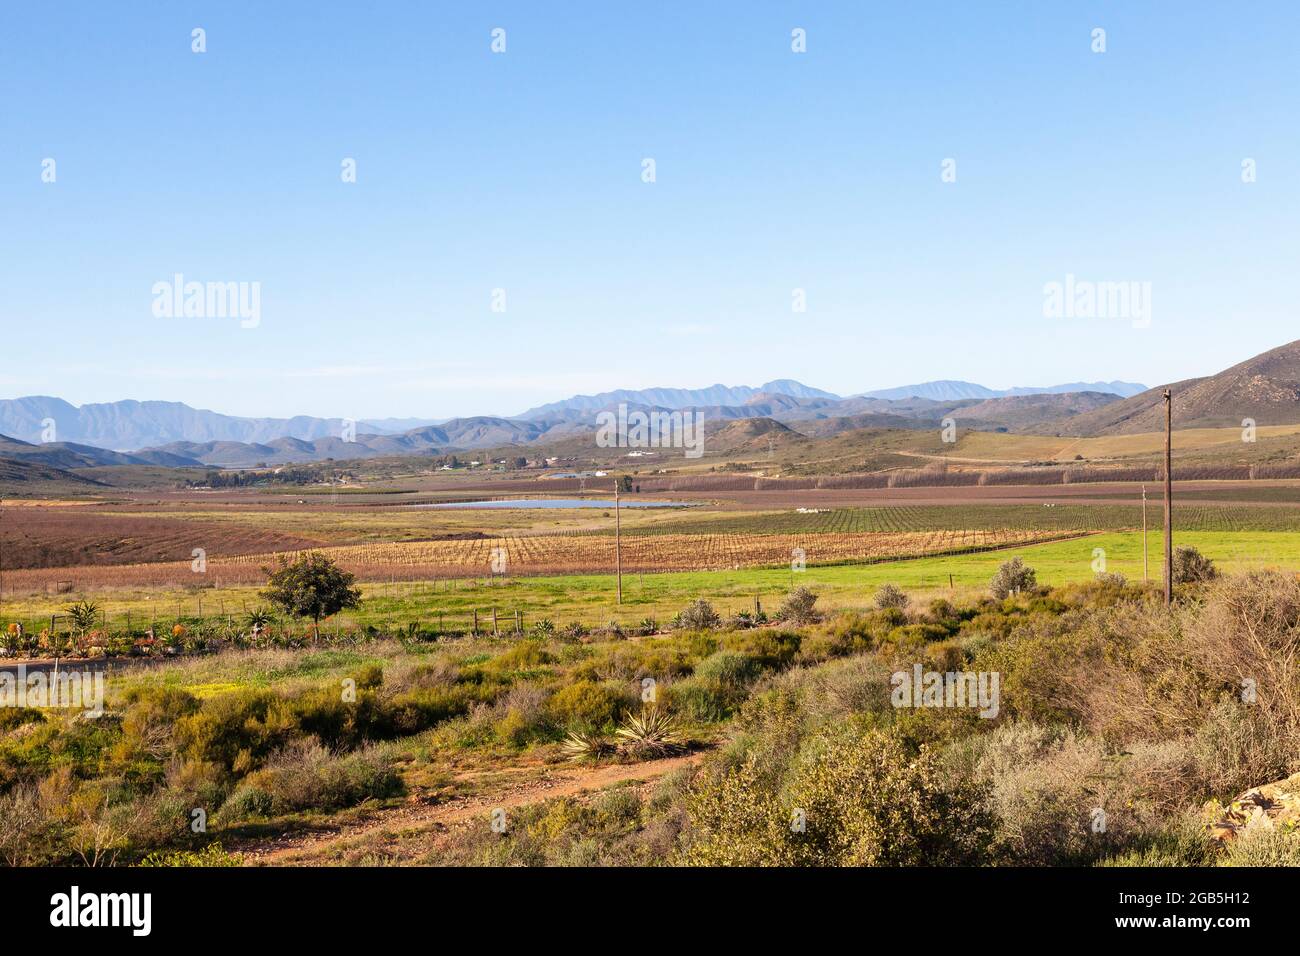 Viñedos en el Valle McGregor con vistas a las montañas Langeberg, Western Cape Winelands, Sudáfrica durante el invierno Foto de stock